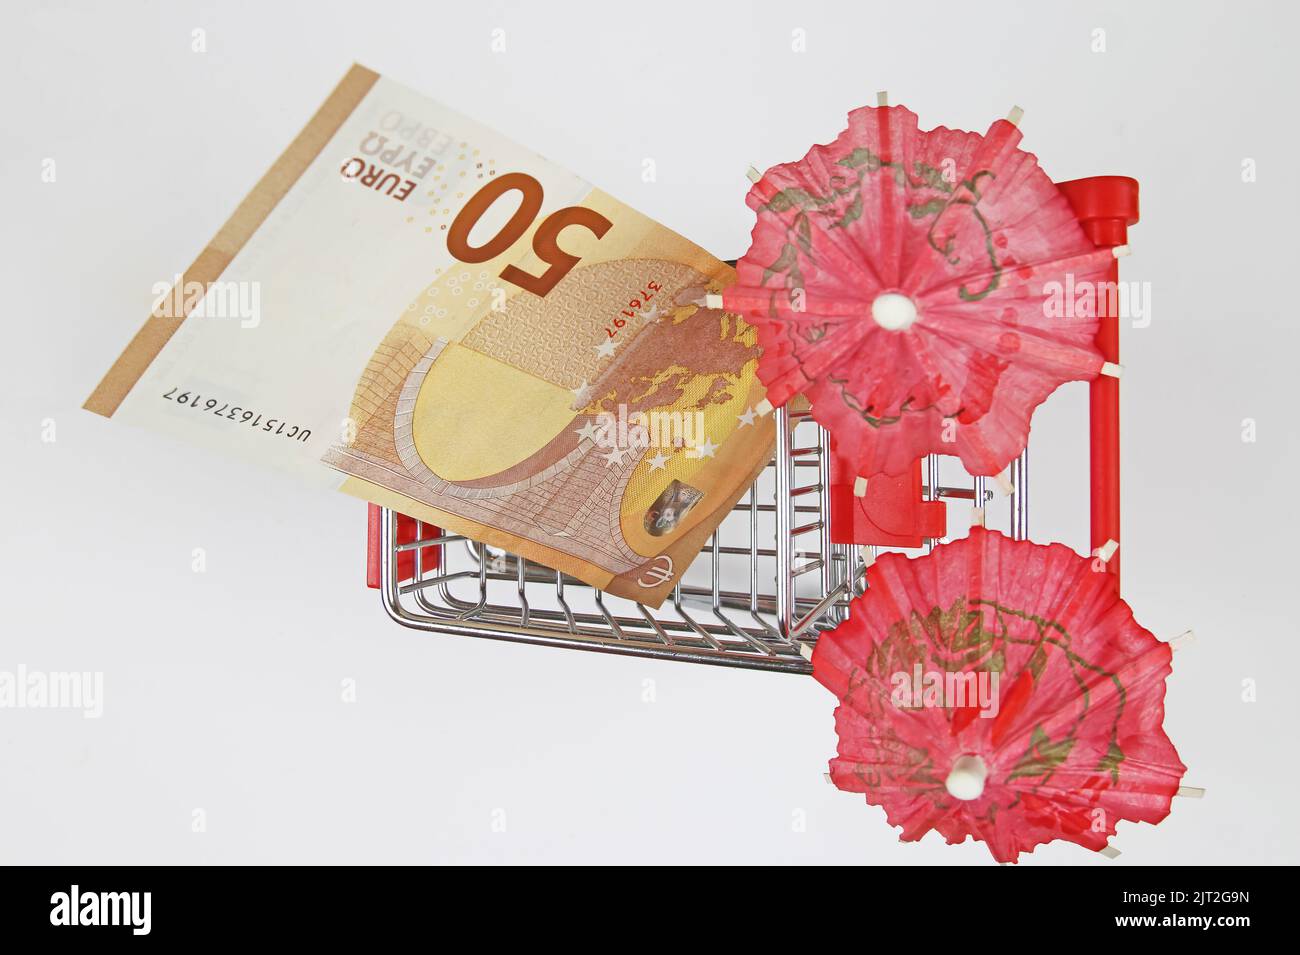 Draufsicht auf isoliertes Warenkorb-Modell mit 50 Euro Banknote, zwei Schirmen, weißer Hintergrund Stockfoto